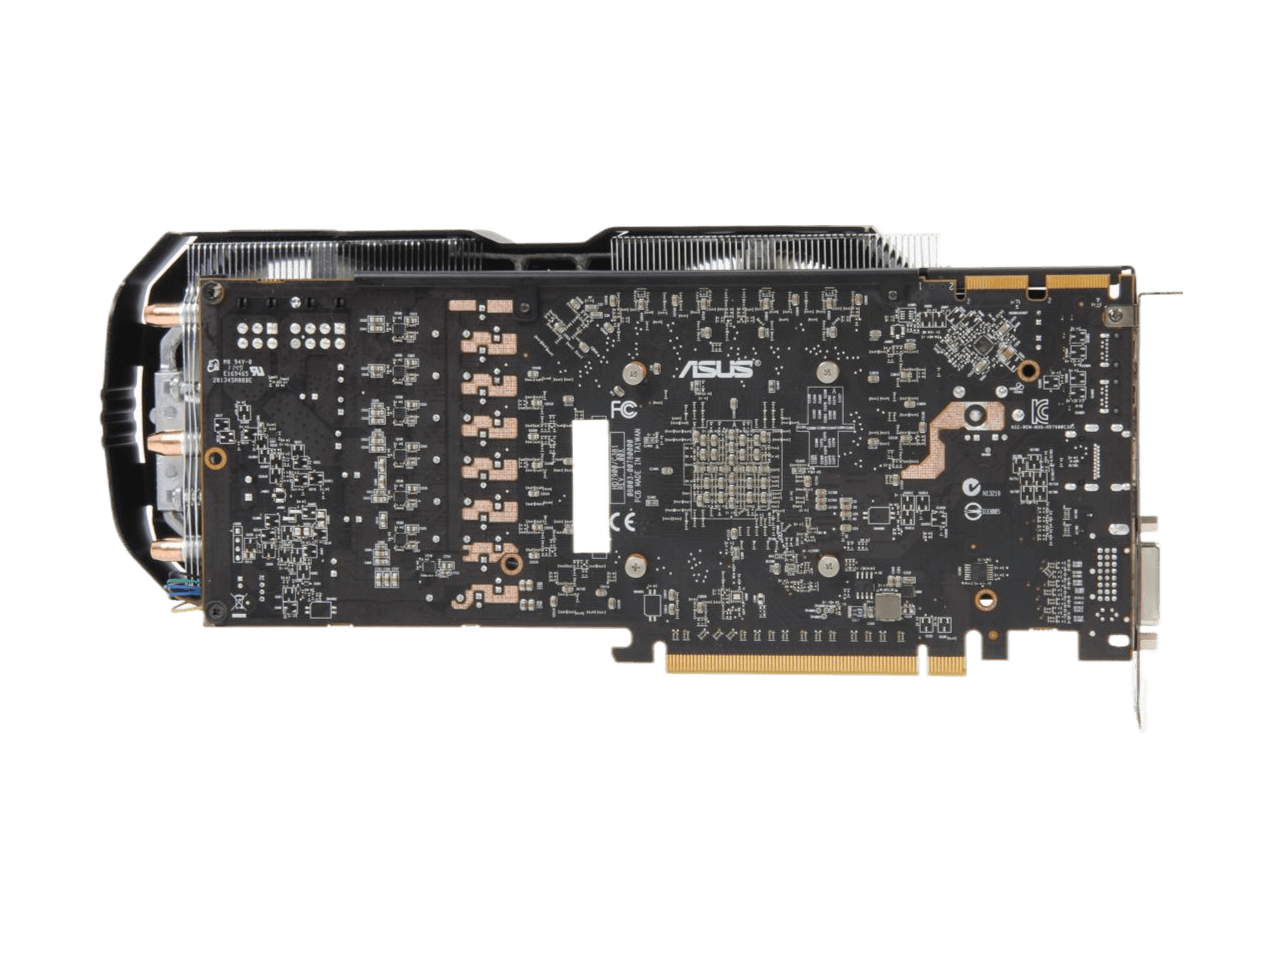 ASUS Radeon HD 7950 3GB GDDR5 PCI Express 3.0 x16 CrossFireX Support Video Card HD7950-DC2T-3GD5